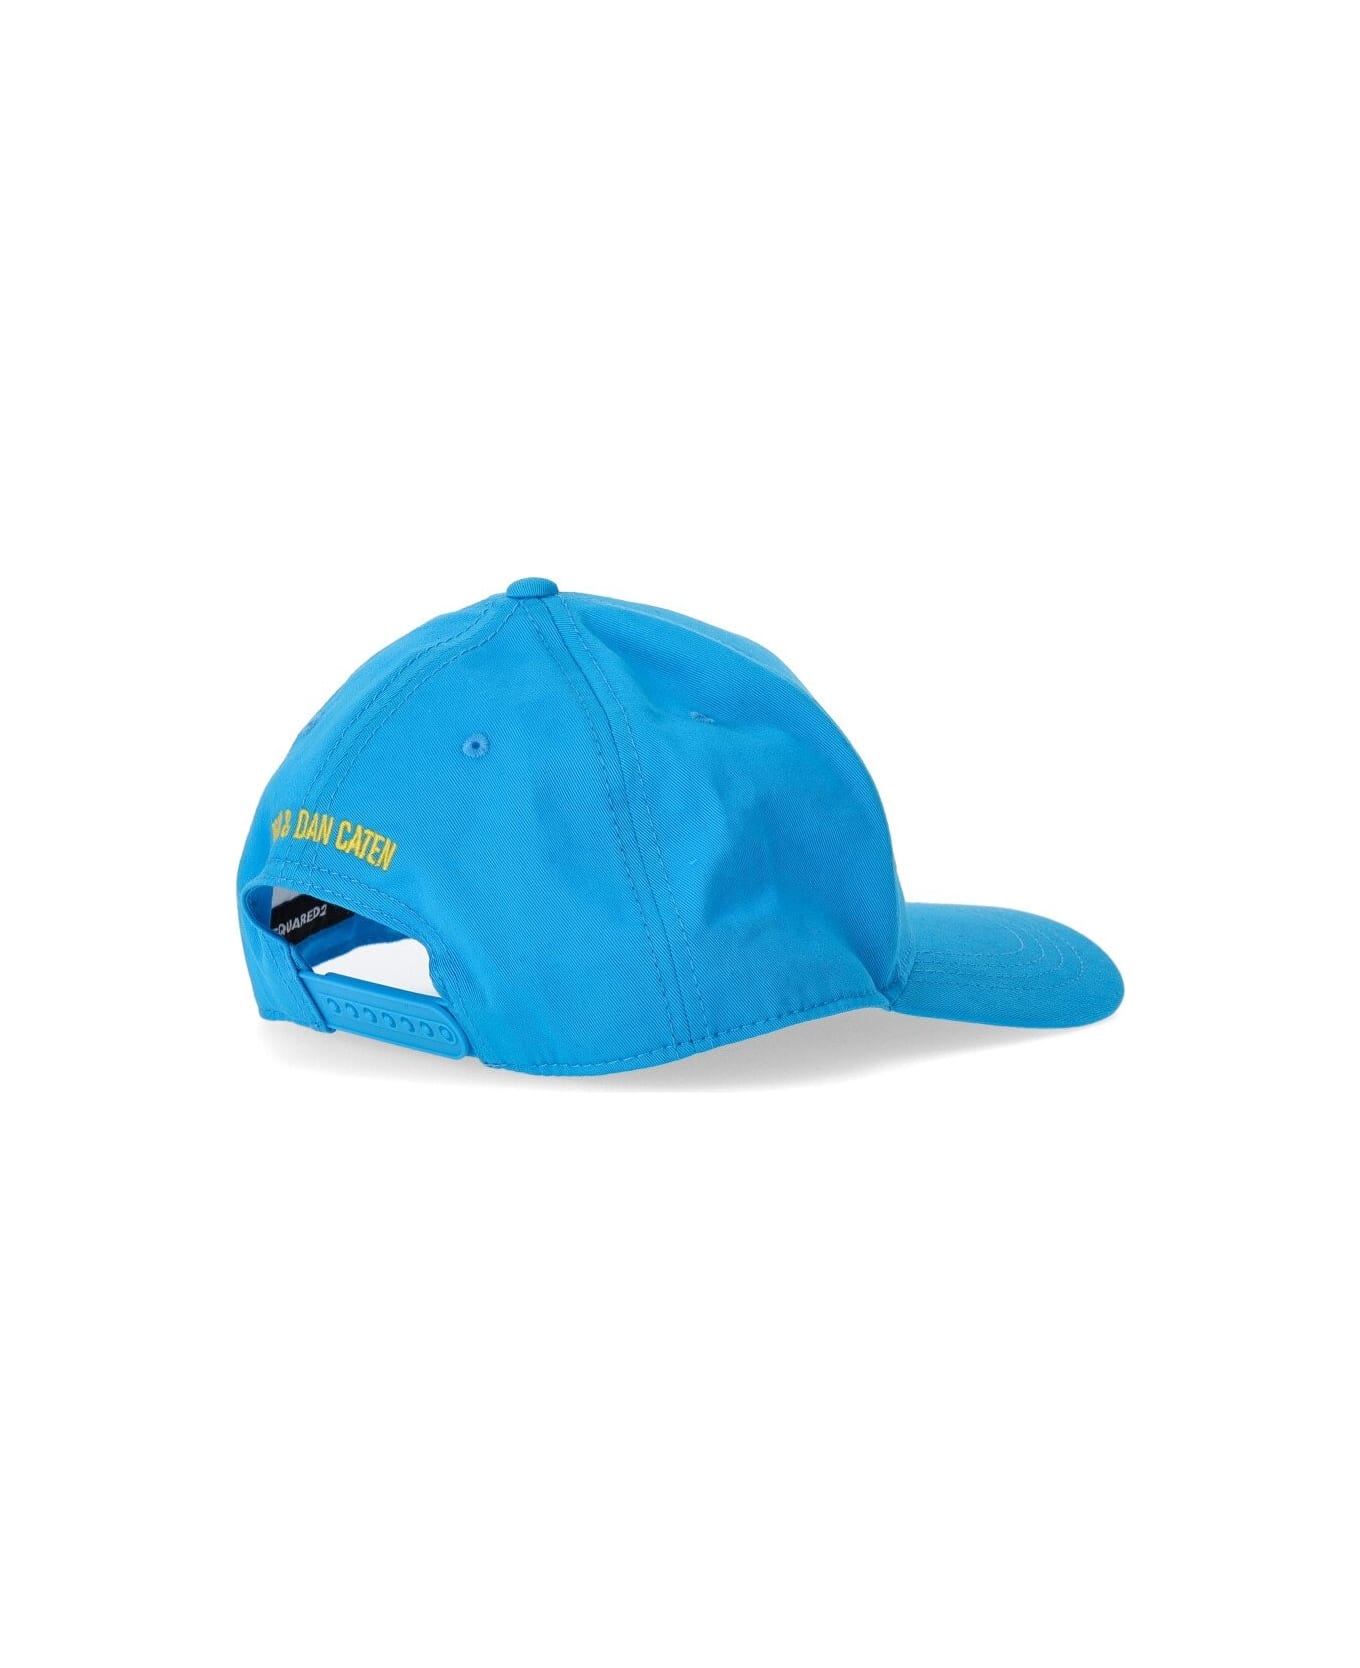 Dsquared2 Technicolor Light Blue Baseball Cap - Azzurro